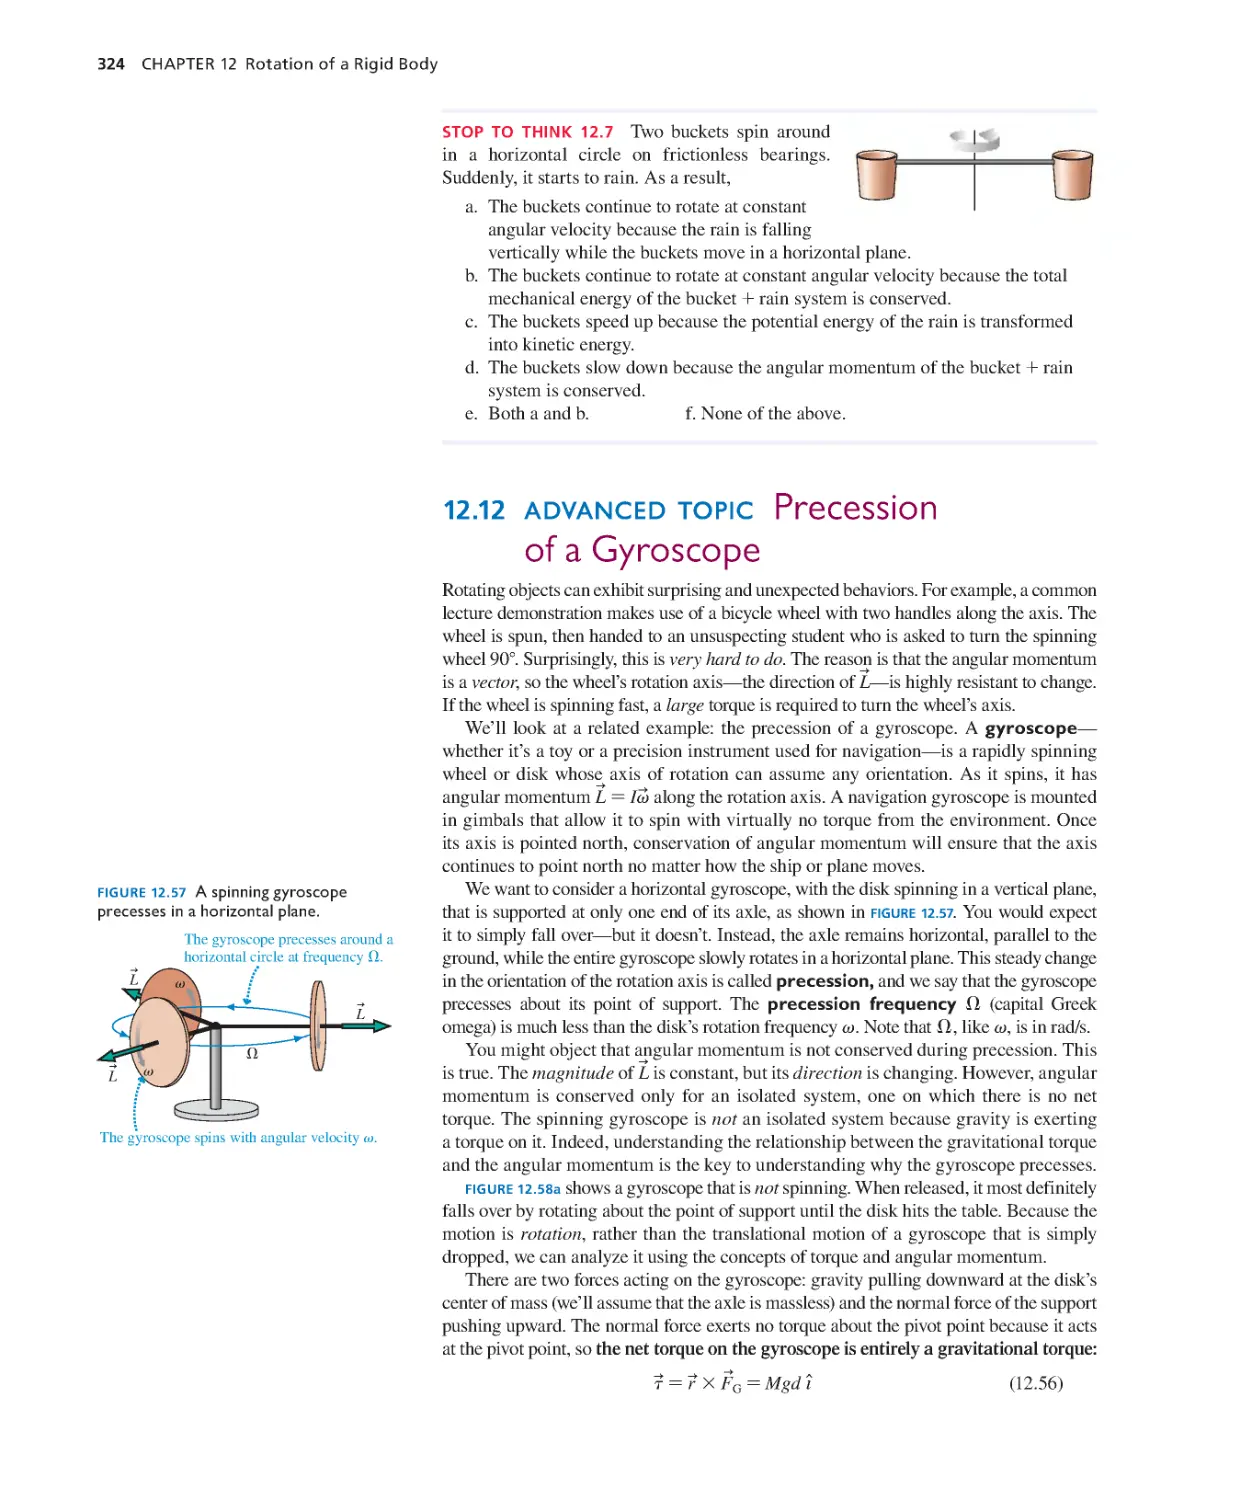 12.12. Advanced Topic: Precession of a Gyroscope